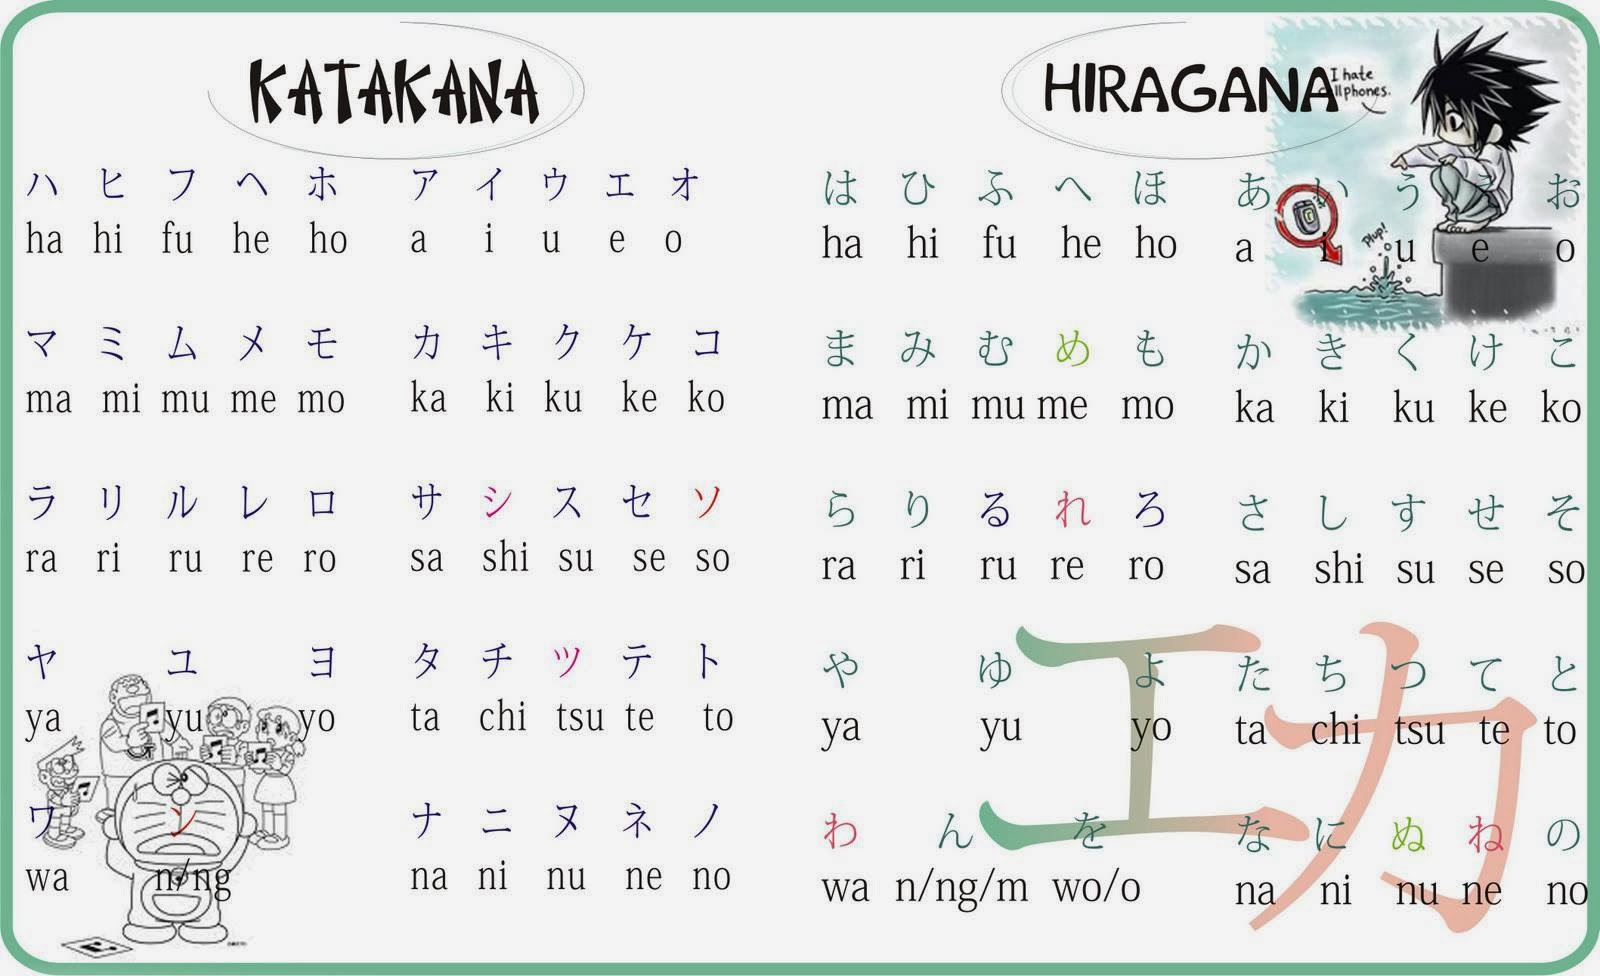 Chữ cứng và chữ mềm trong tiếng Nhật